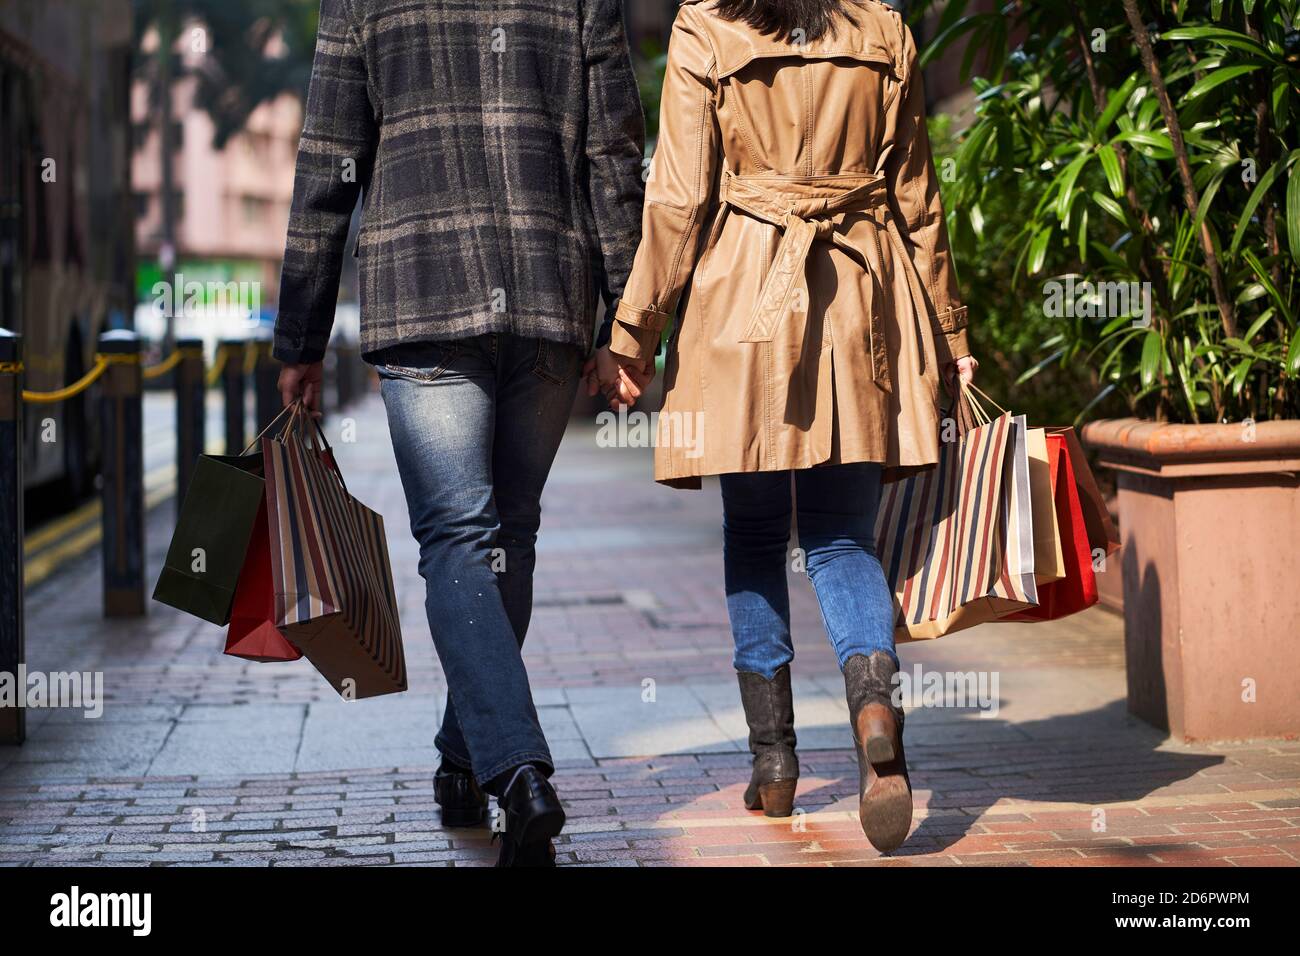 Rückansicht eines jungen asiatischen Paares, das auf der Straße läuft Einkaufstaschen in den Händen Stockfoto